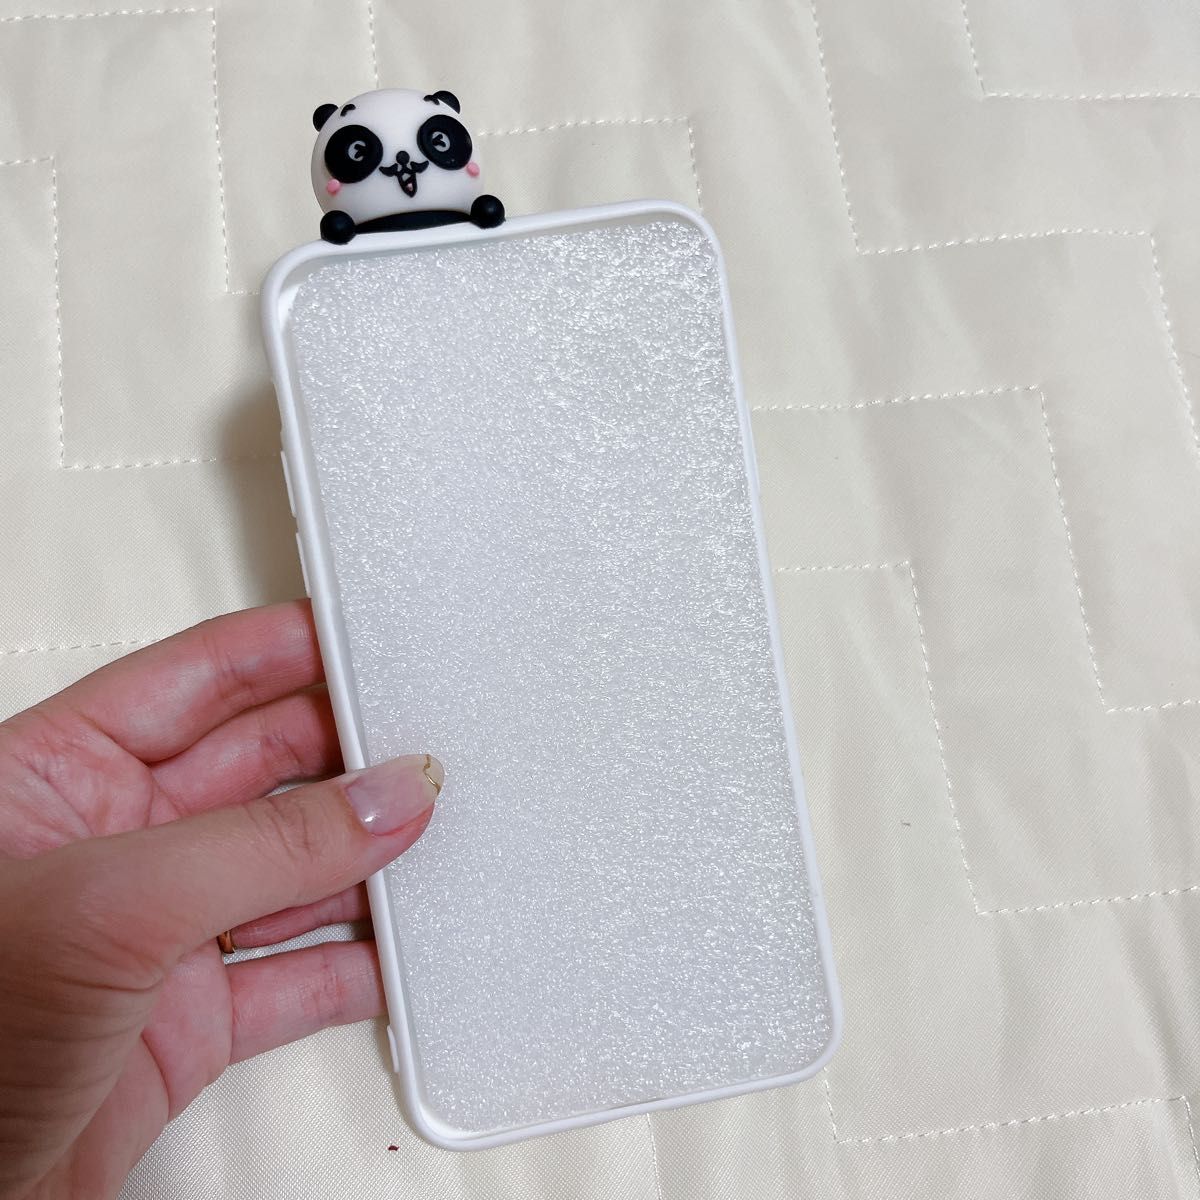 スマホケース iPhone 11 Pro Max シリコン ソフトフレーム パンダ カバー 薄型 かわいい 3D 白黒 ホワイト